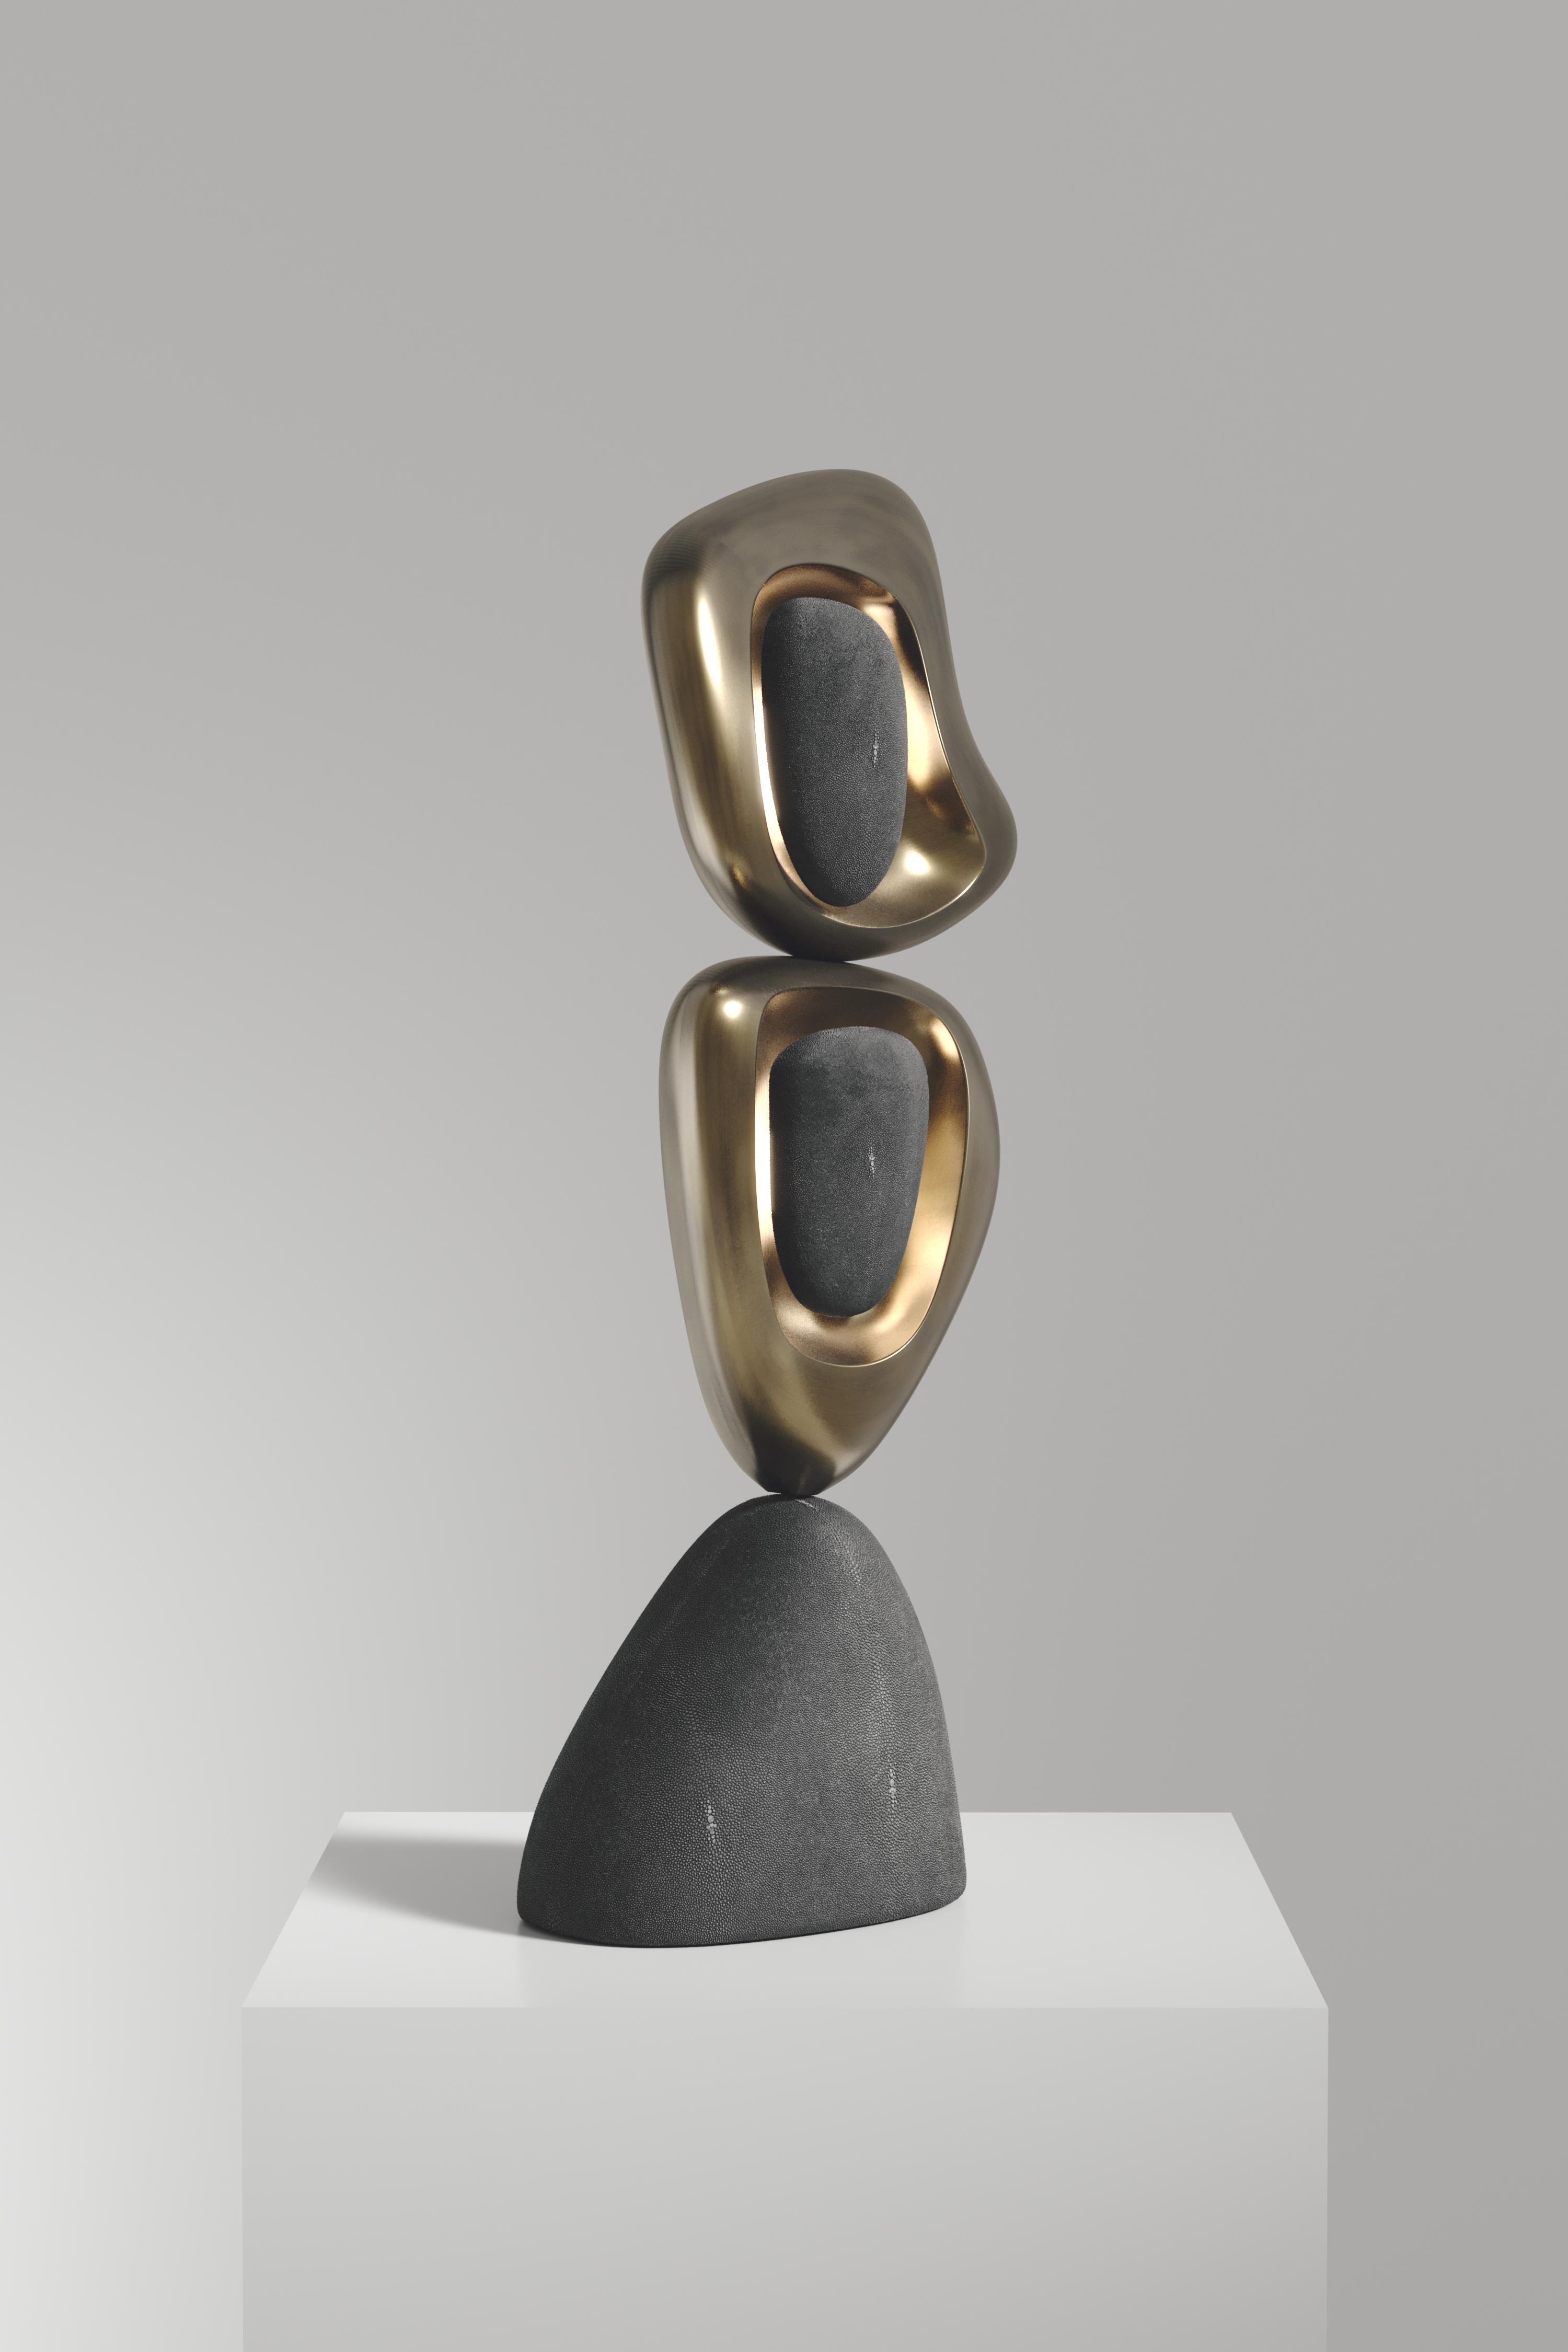 La lampe de table Owl de R&Y Augousti est une pièce sculpturale à l'allure vintage-moderne. La pièce explore les courbes organiques bulbeuses avec des détails subtils pour créer l'esthétique Augousti. Les parties suspendues qui recouvrent la source